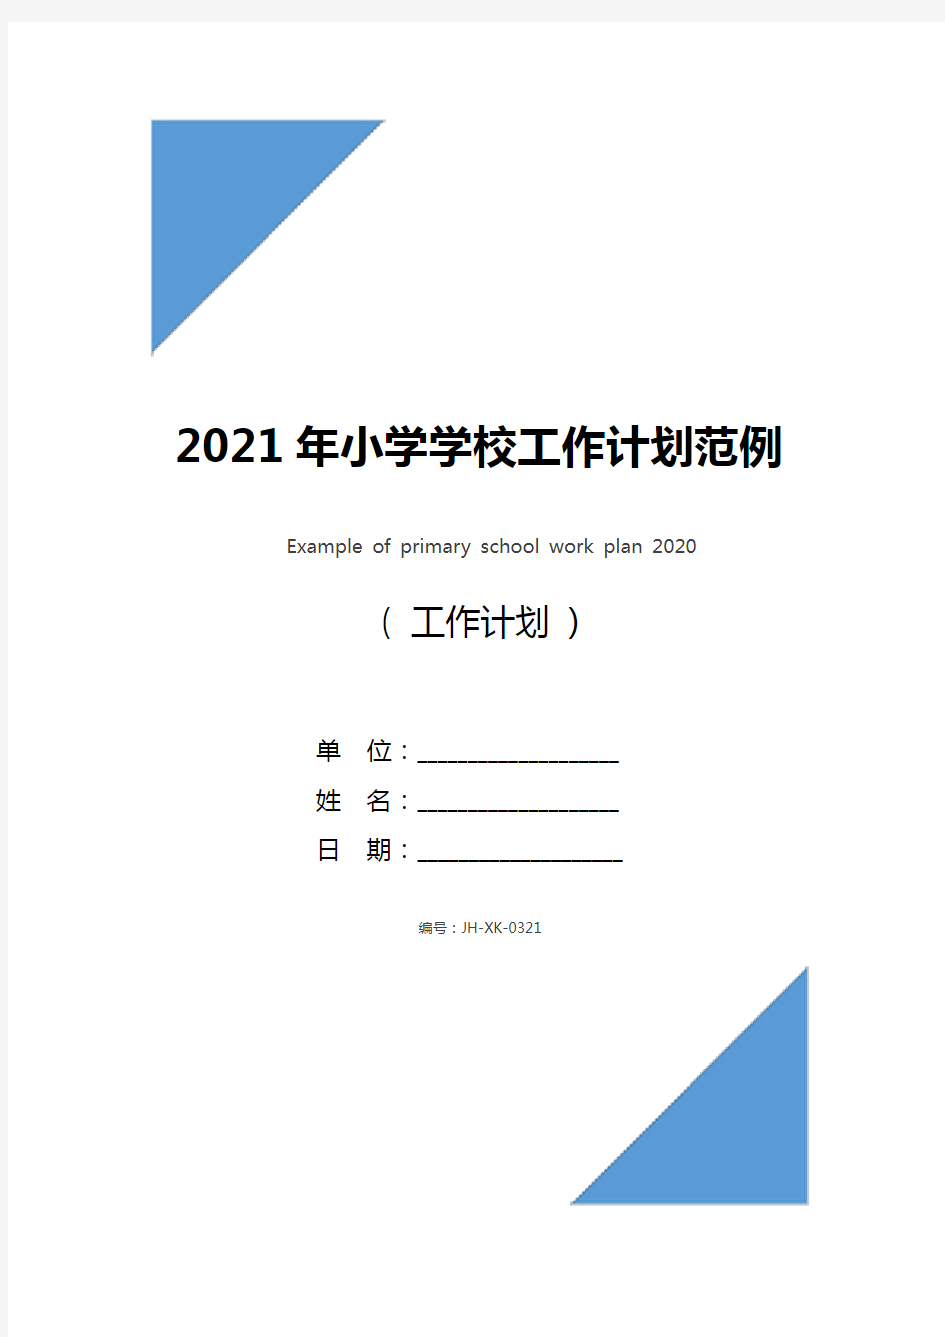 2021年小学学校工作计划范例(通用版)